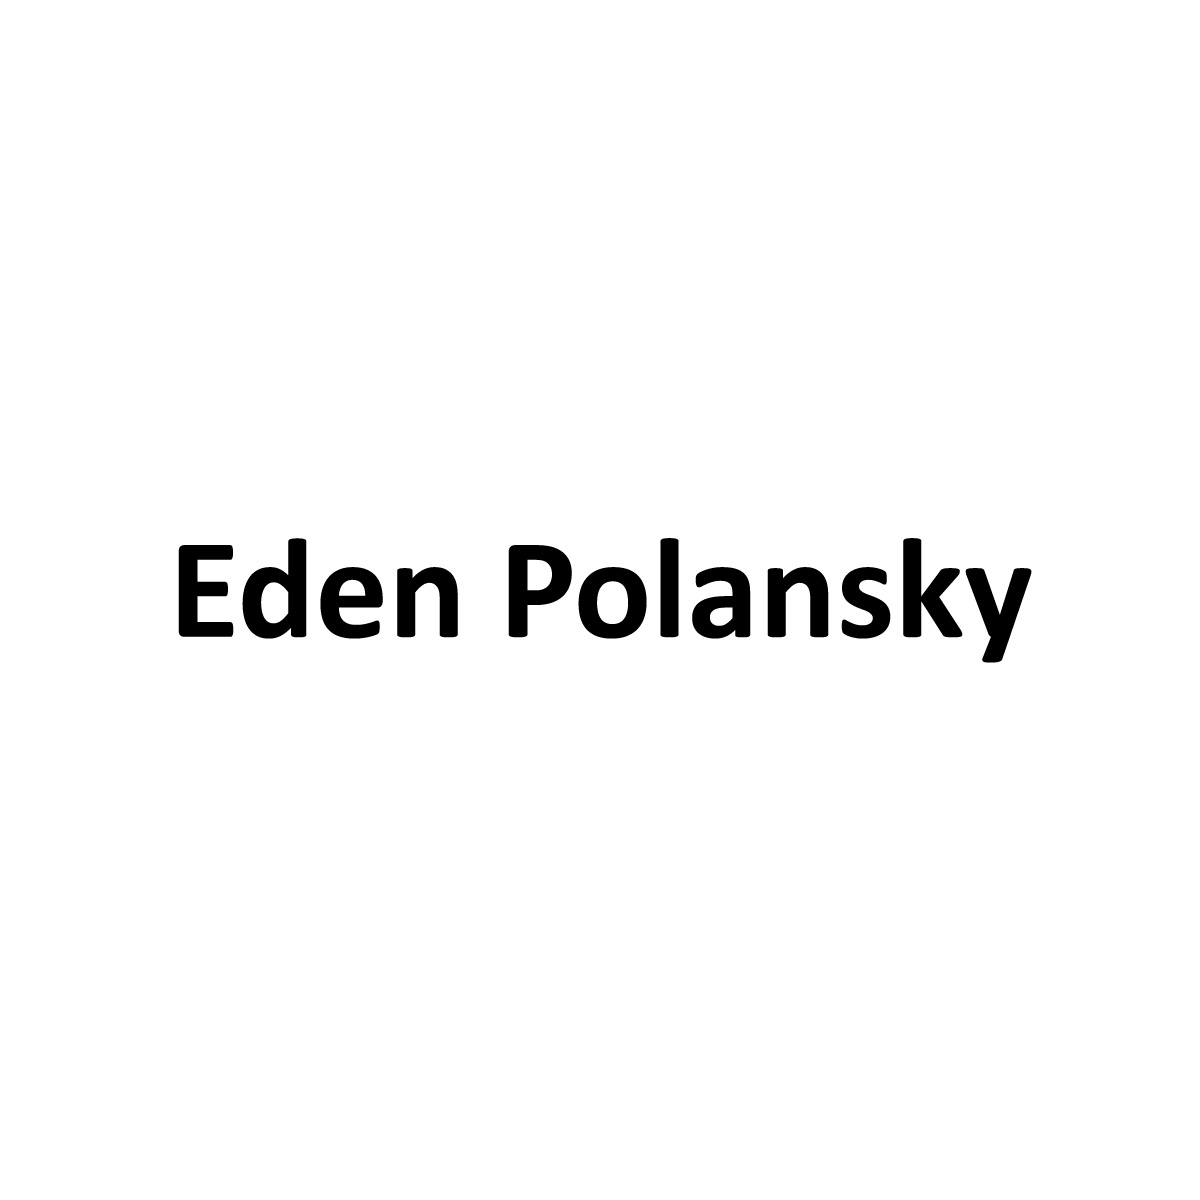 President's Circle - Eden Polansky